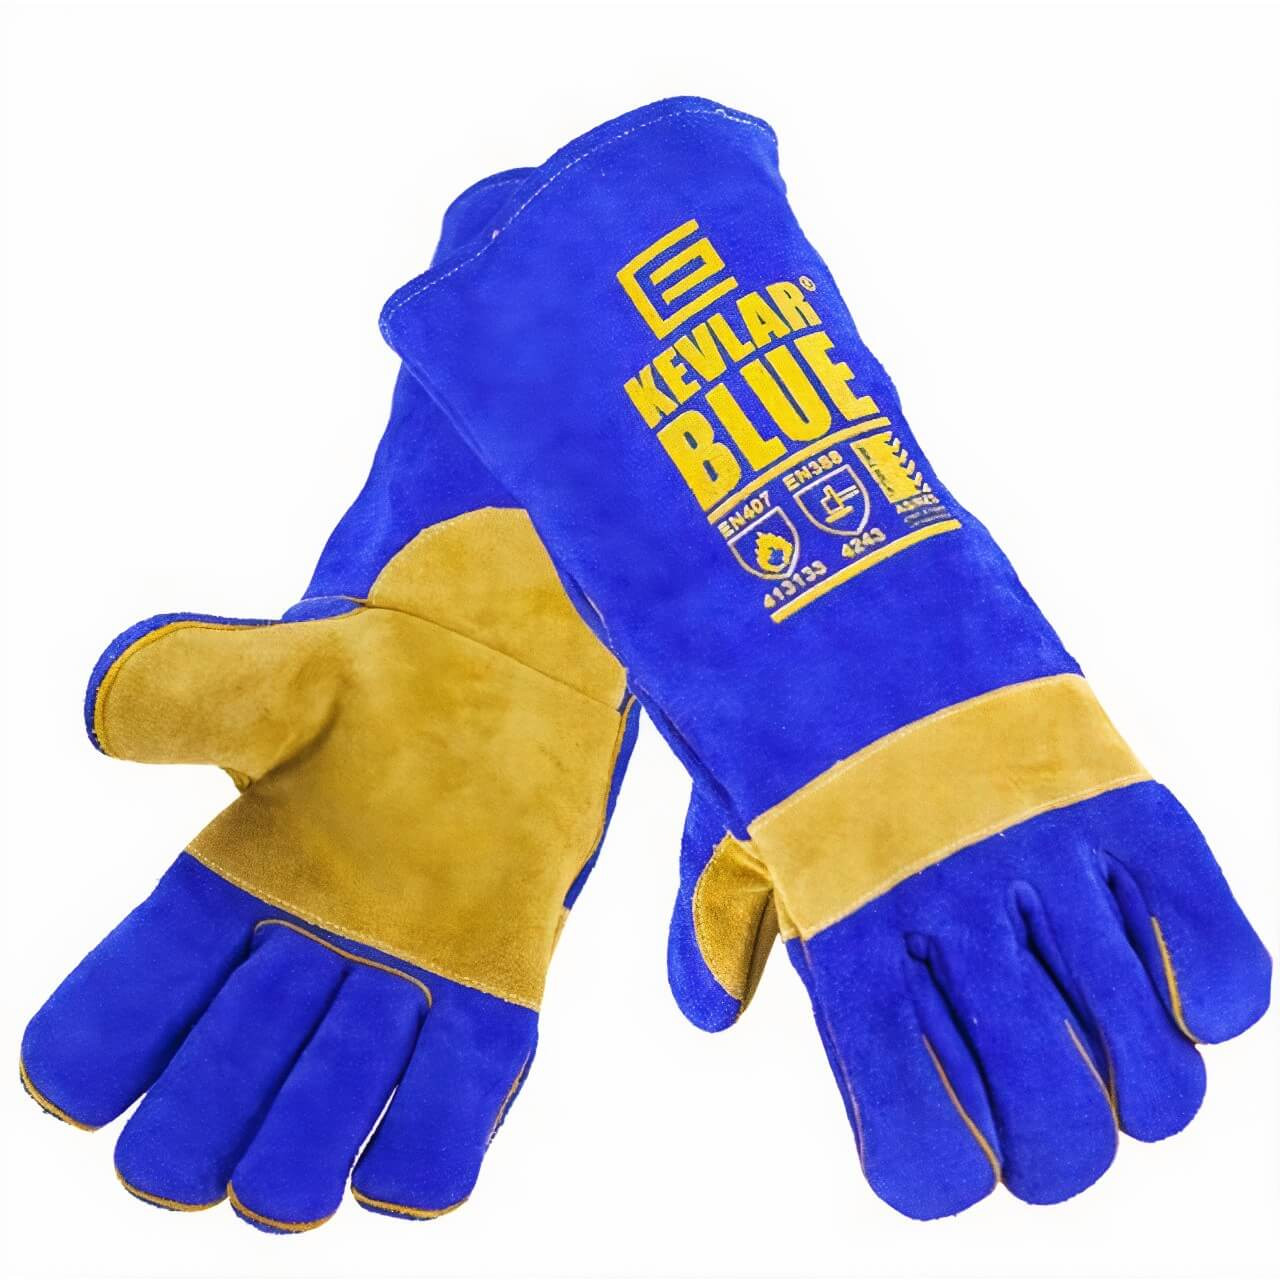 Kevlar Blue Leather Welding Gloves